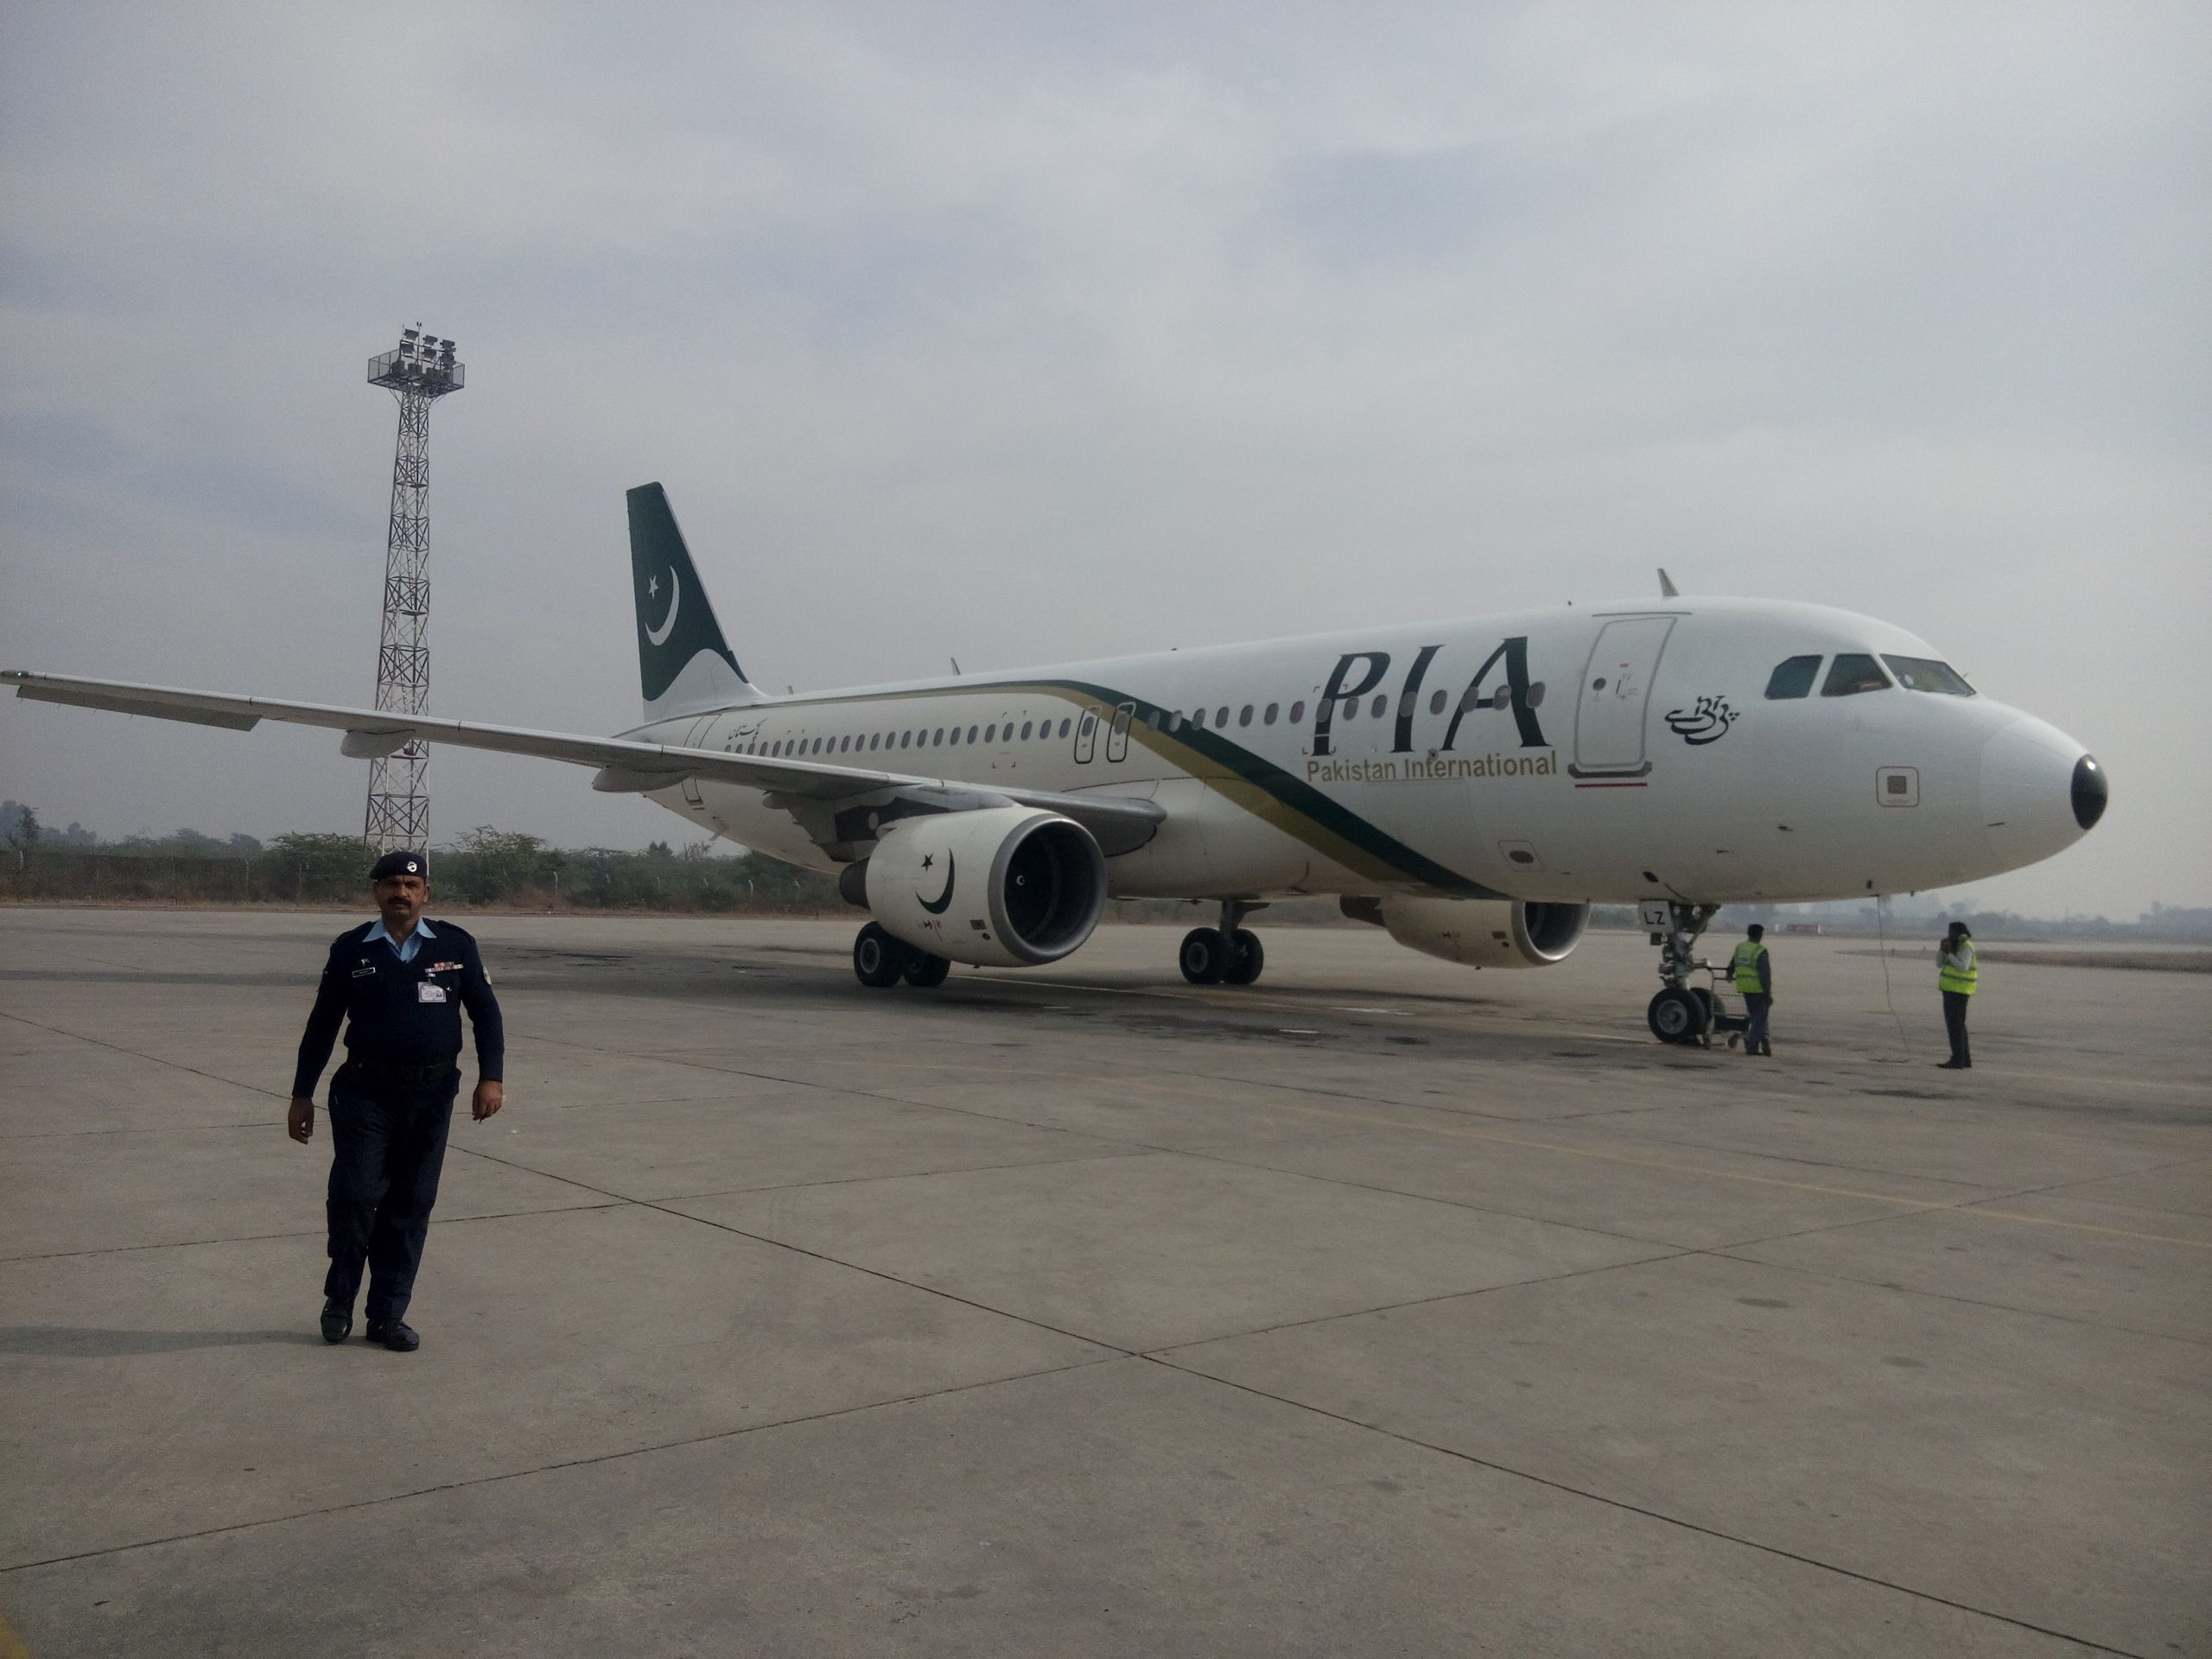 Le crash de Pakistan International Airlines en vidéos 11 Air Journal